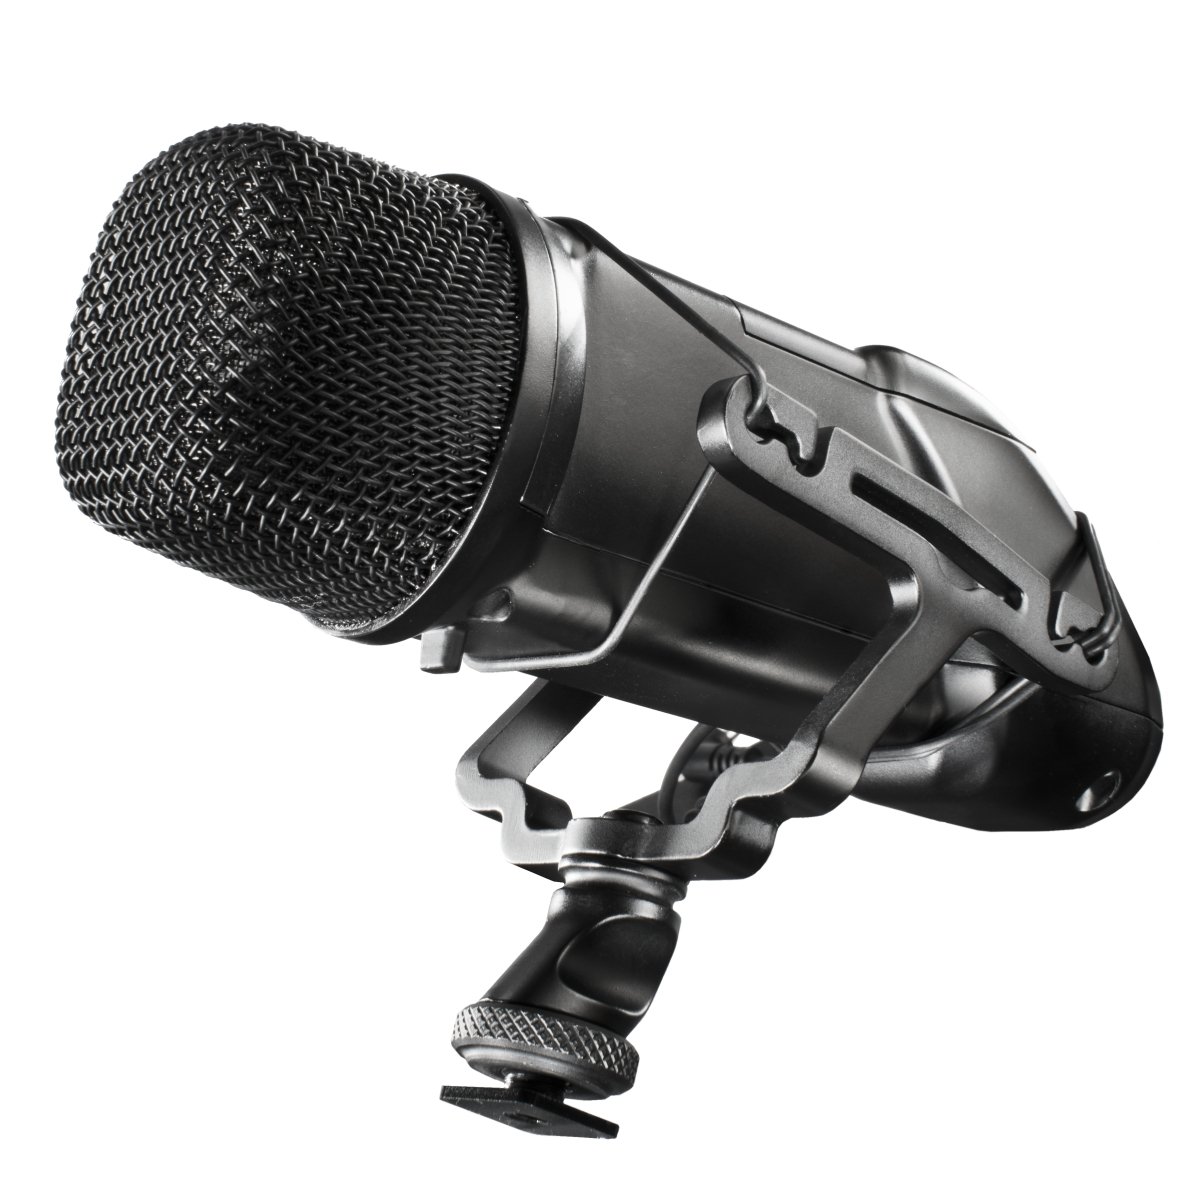 Walimex Pro Stereomikrofon für DSLR Kamera mit Videofunktion